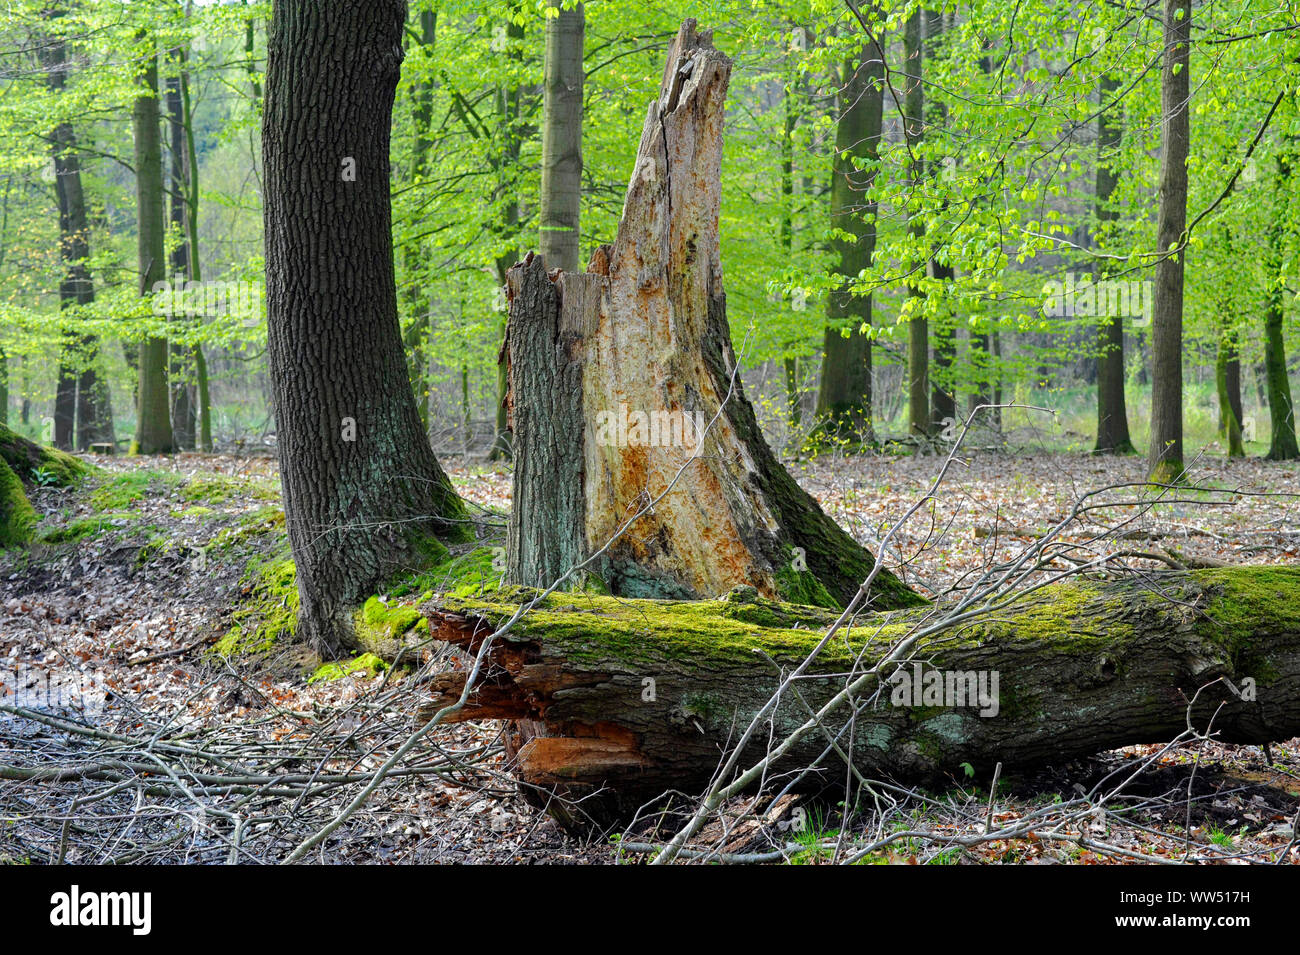 Vicino alla foresta naturale paesaggio, fogliame foresta mista con rame forte faggi, il più importante dei boschi di latifoglie dell'Europa centrale, oltre a legno morto Foto Stock